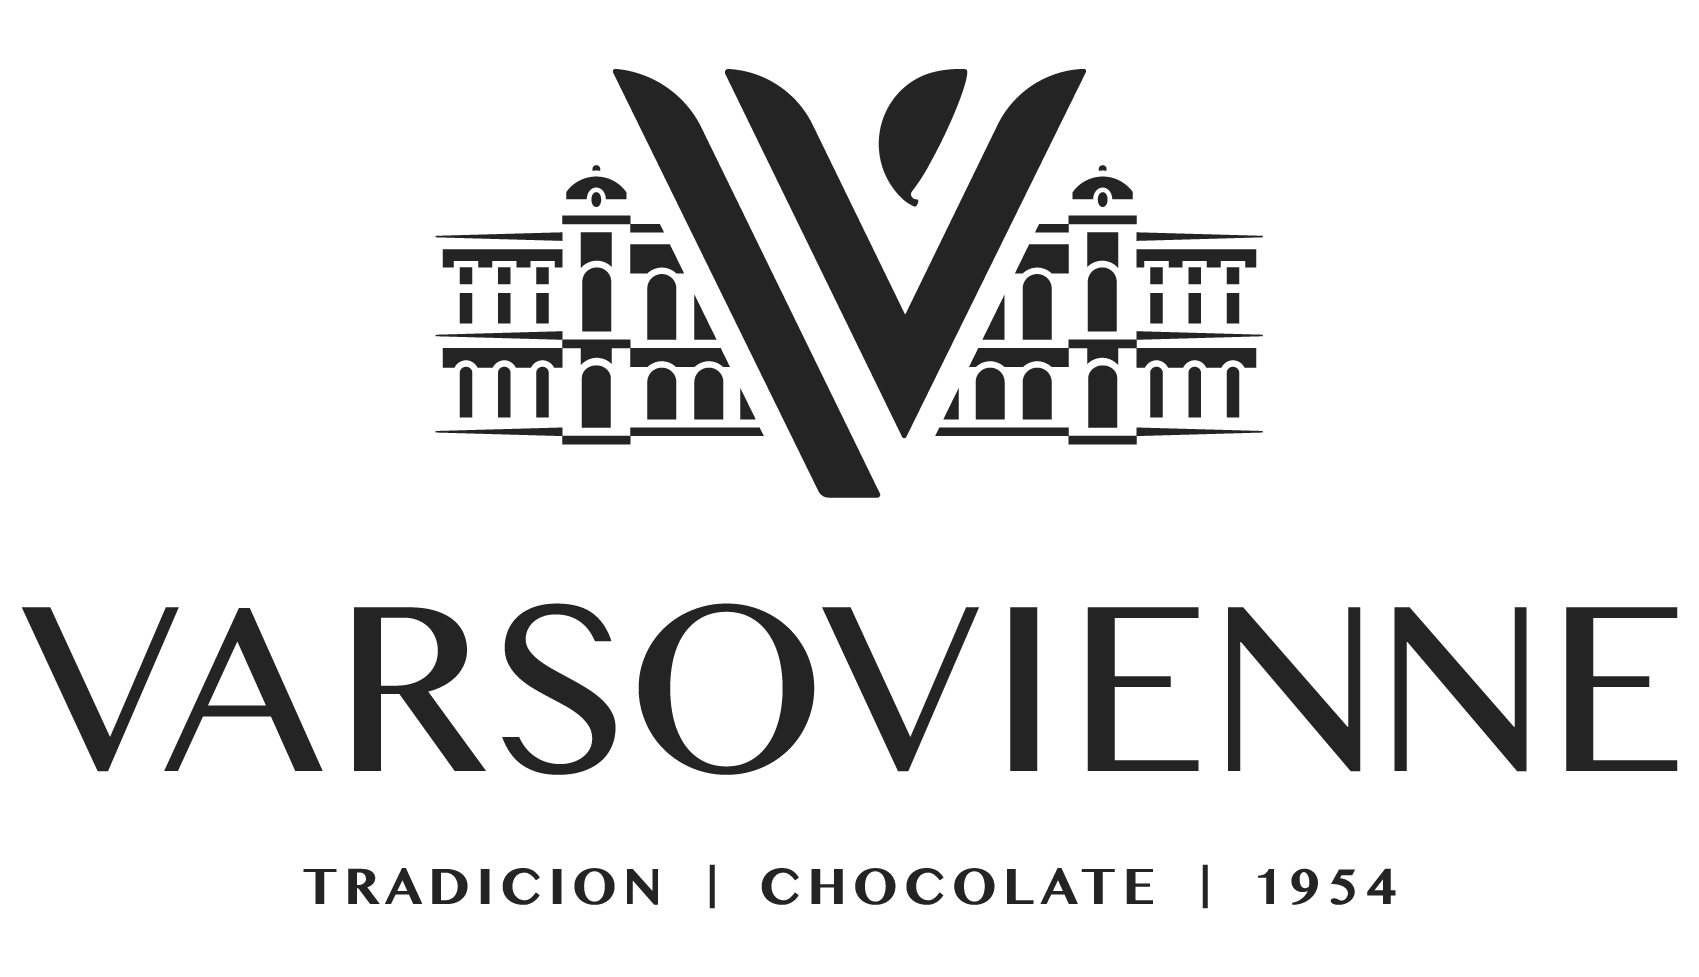 Varsovienne Chocolates